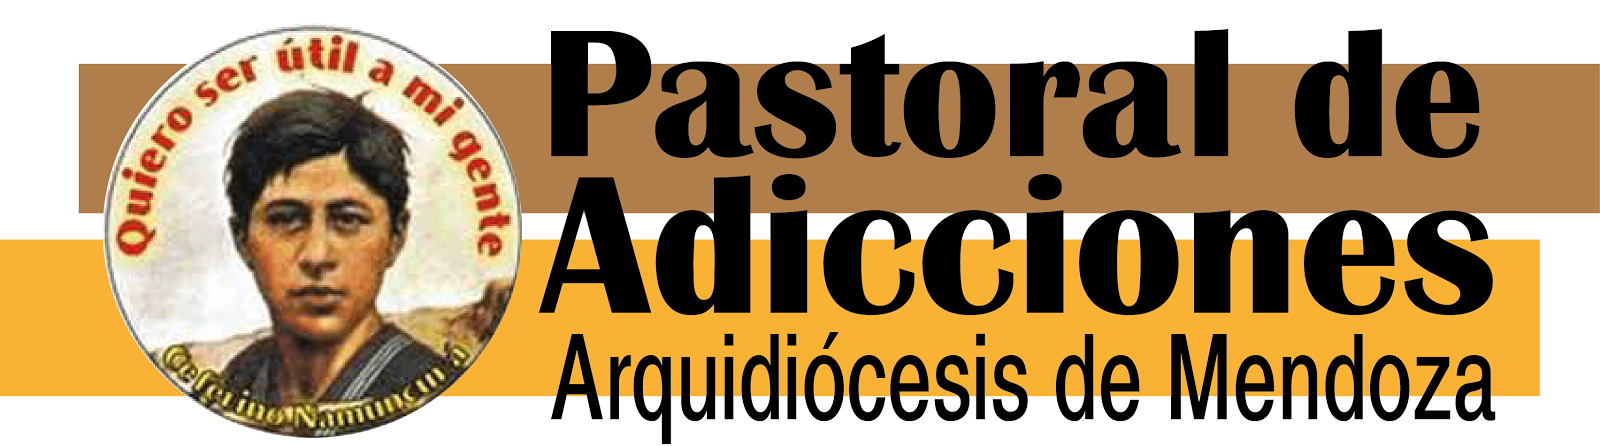 Pastoral de adicciones Mendoza